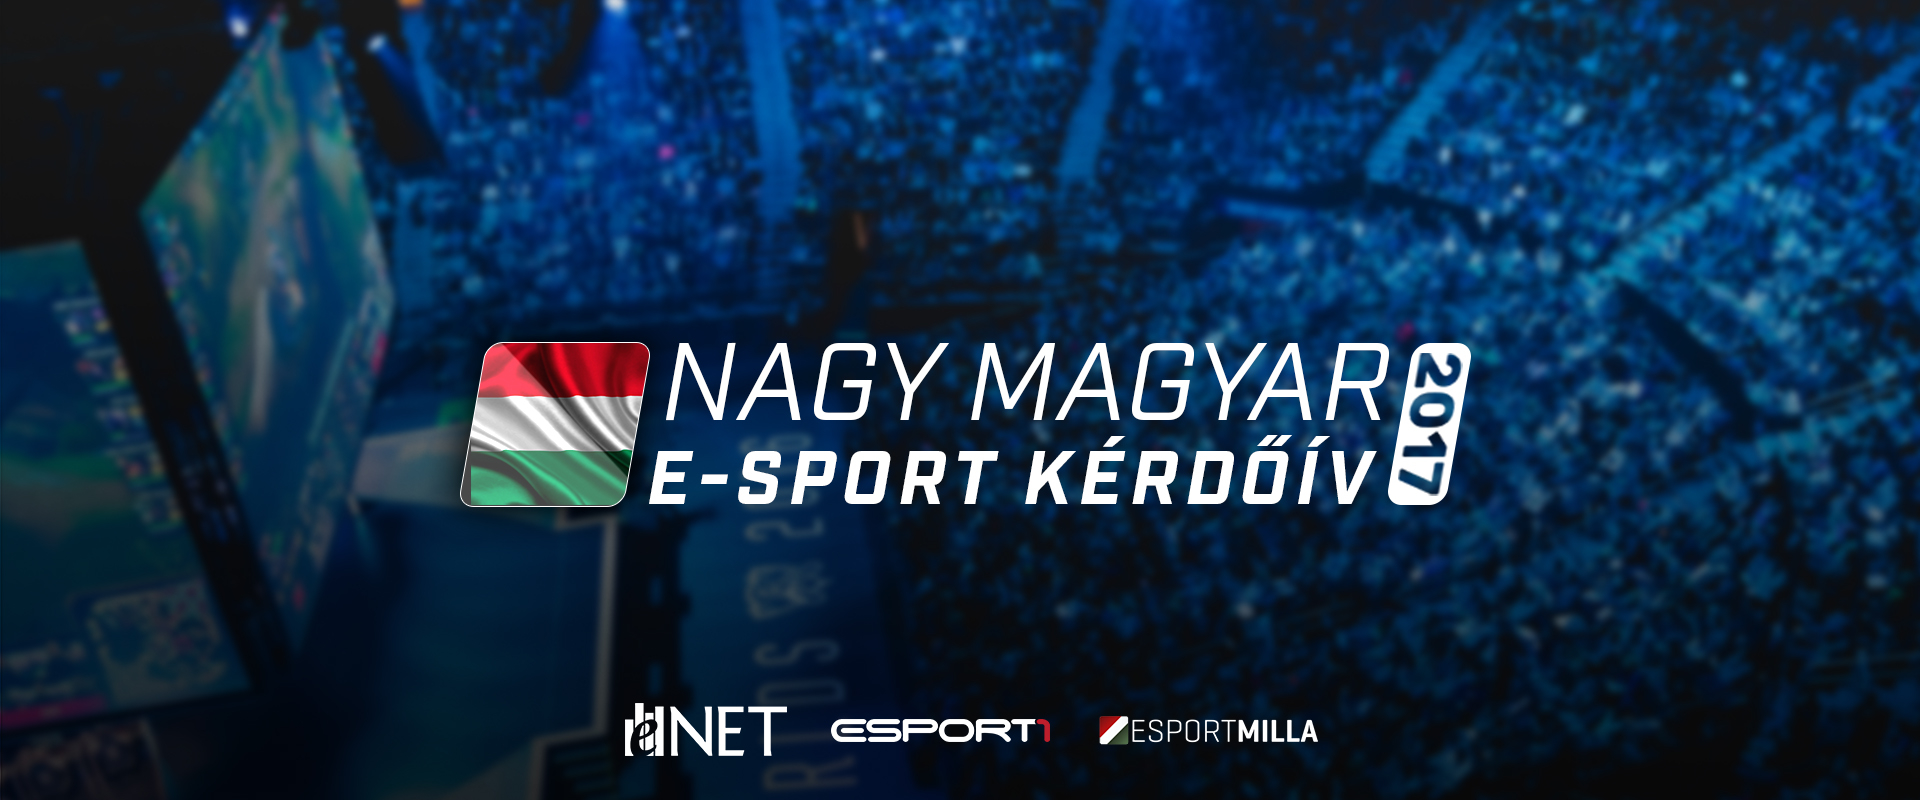 Töltsd ki a 2017-es Magyar E-sport Kérdőívet és nyerj jegyet a PlayIT-re!